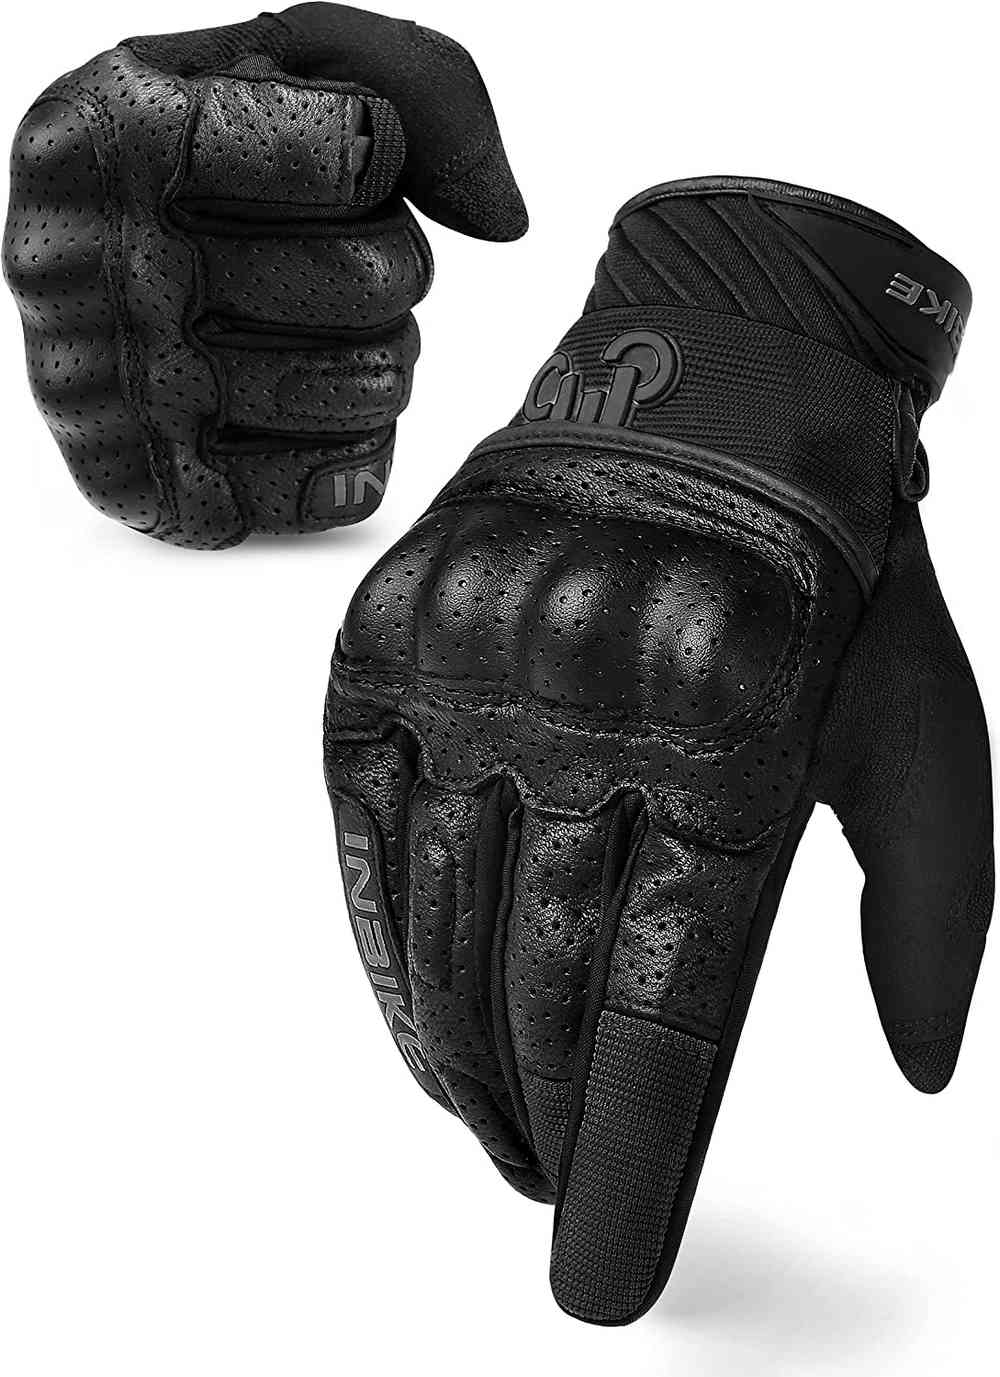 Continuo aquí Mata Los mejores guantes para moto para proteger tus manos